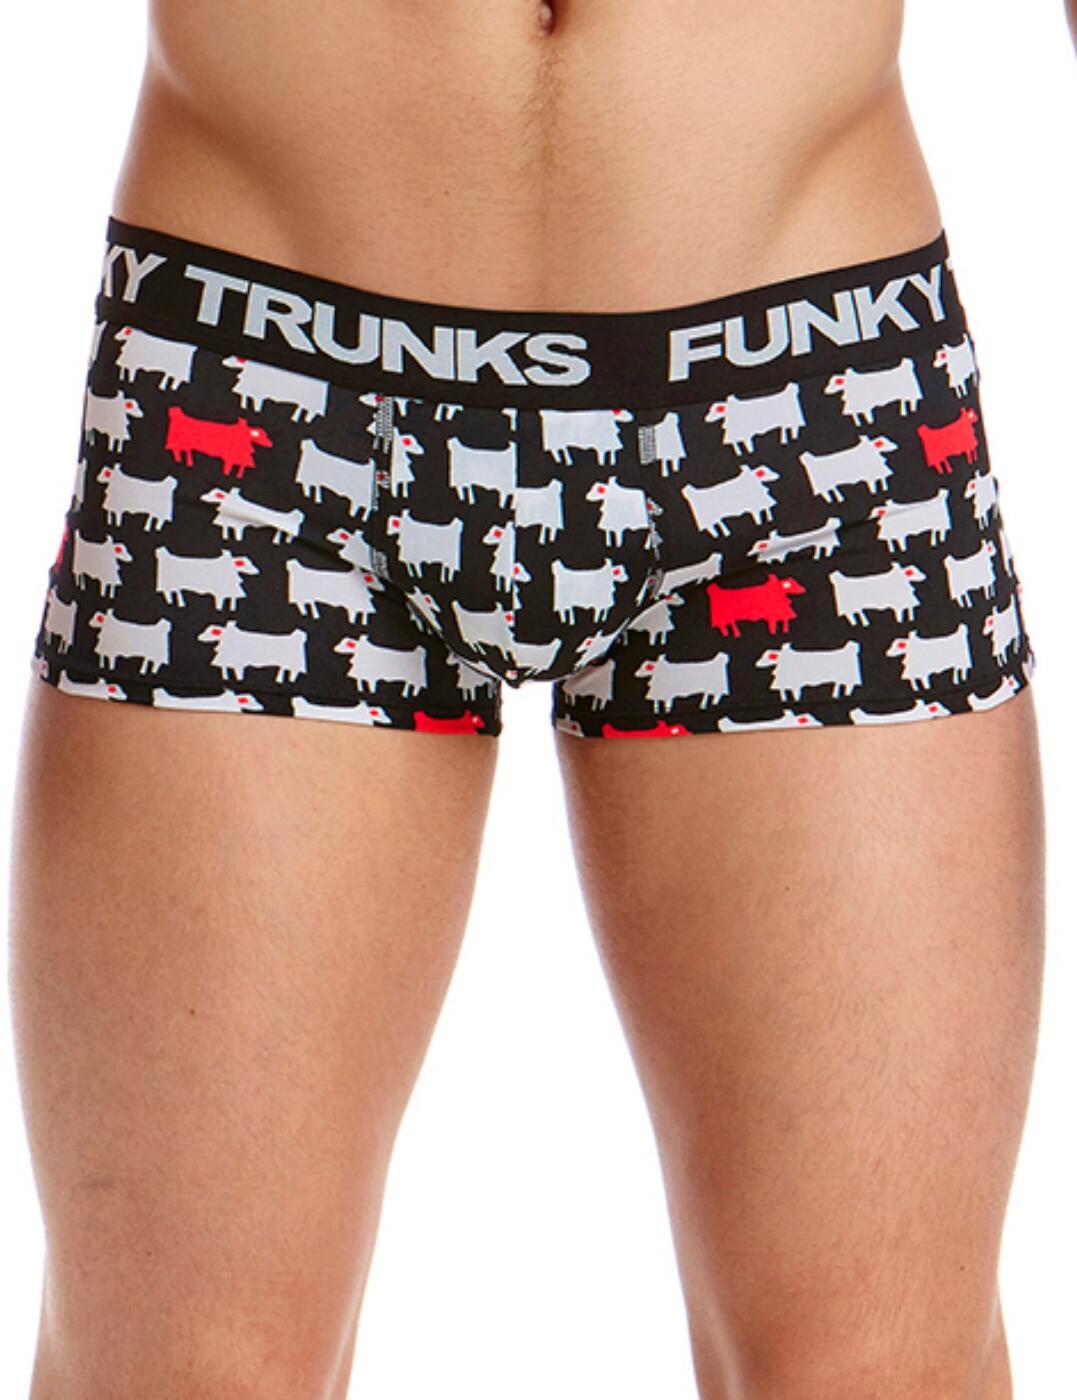 FT50M Funky Trunks Mens Underwear Trunks - FT50M01973 Angry Ram